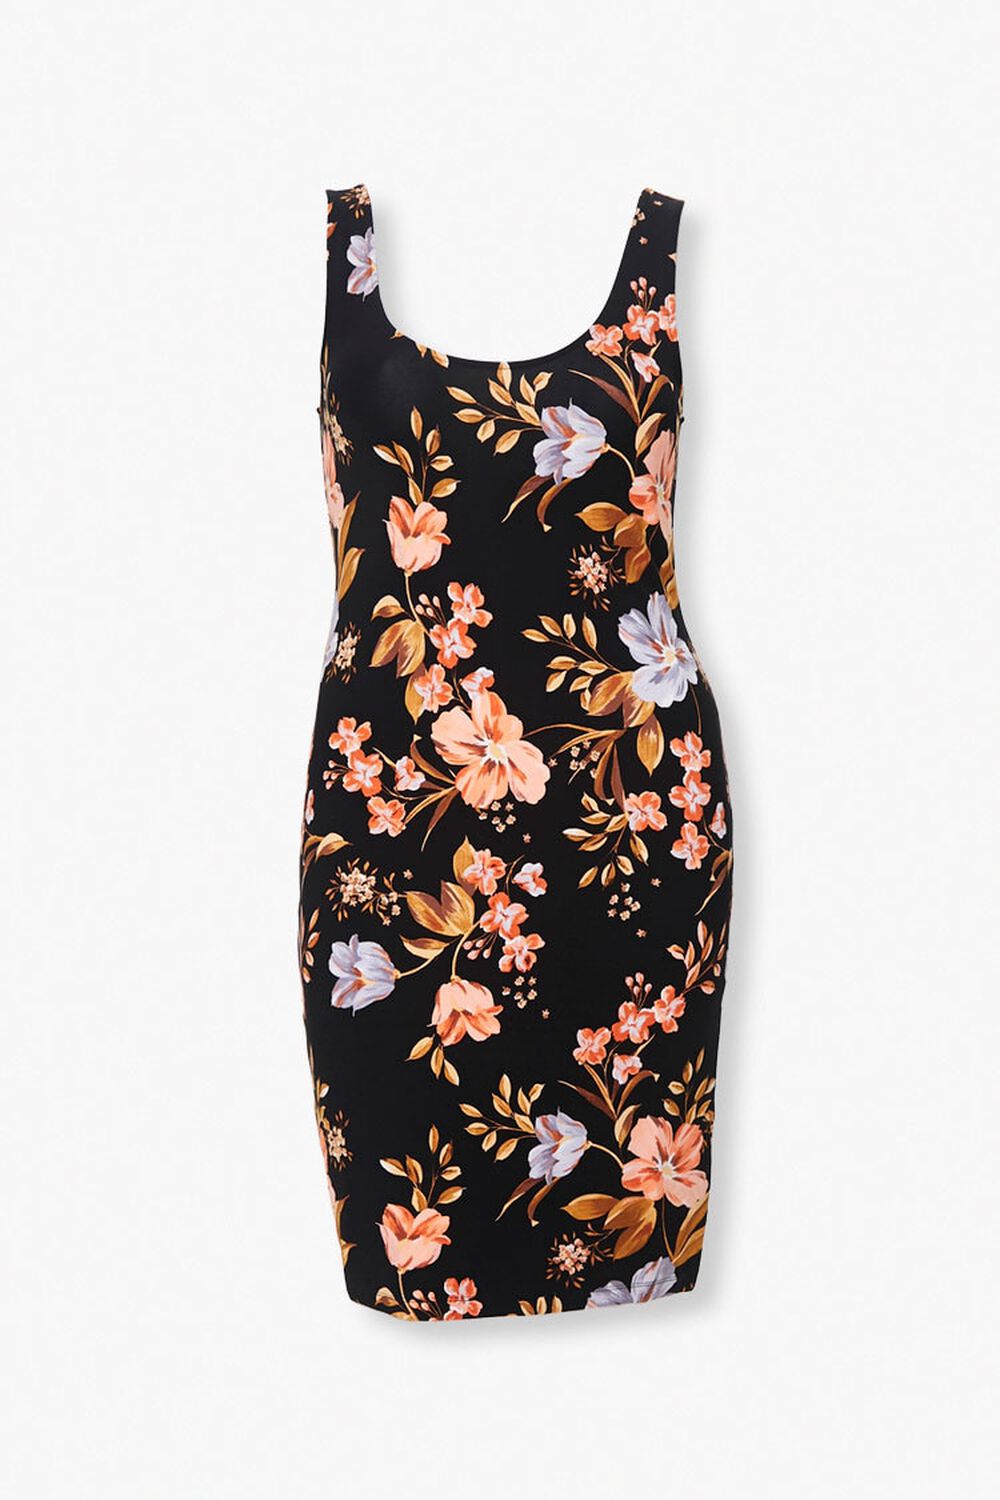 Plus Size Floral Tank Dress, image 1